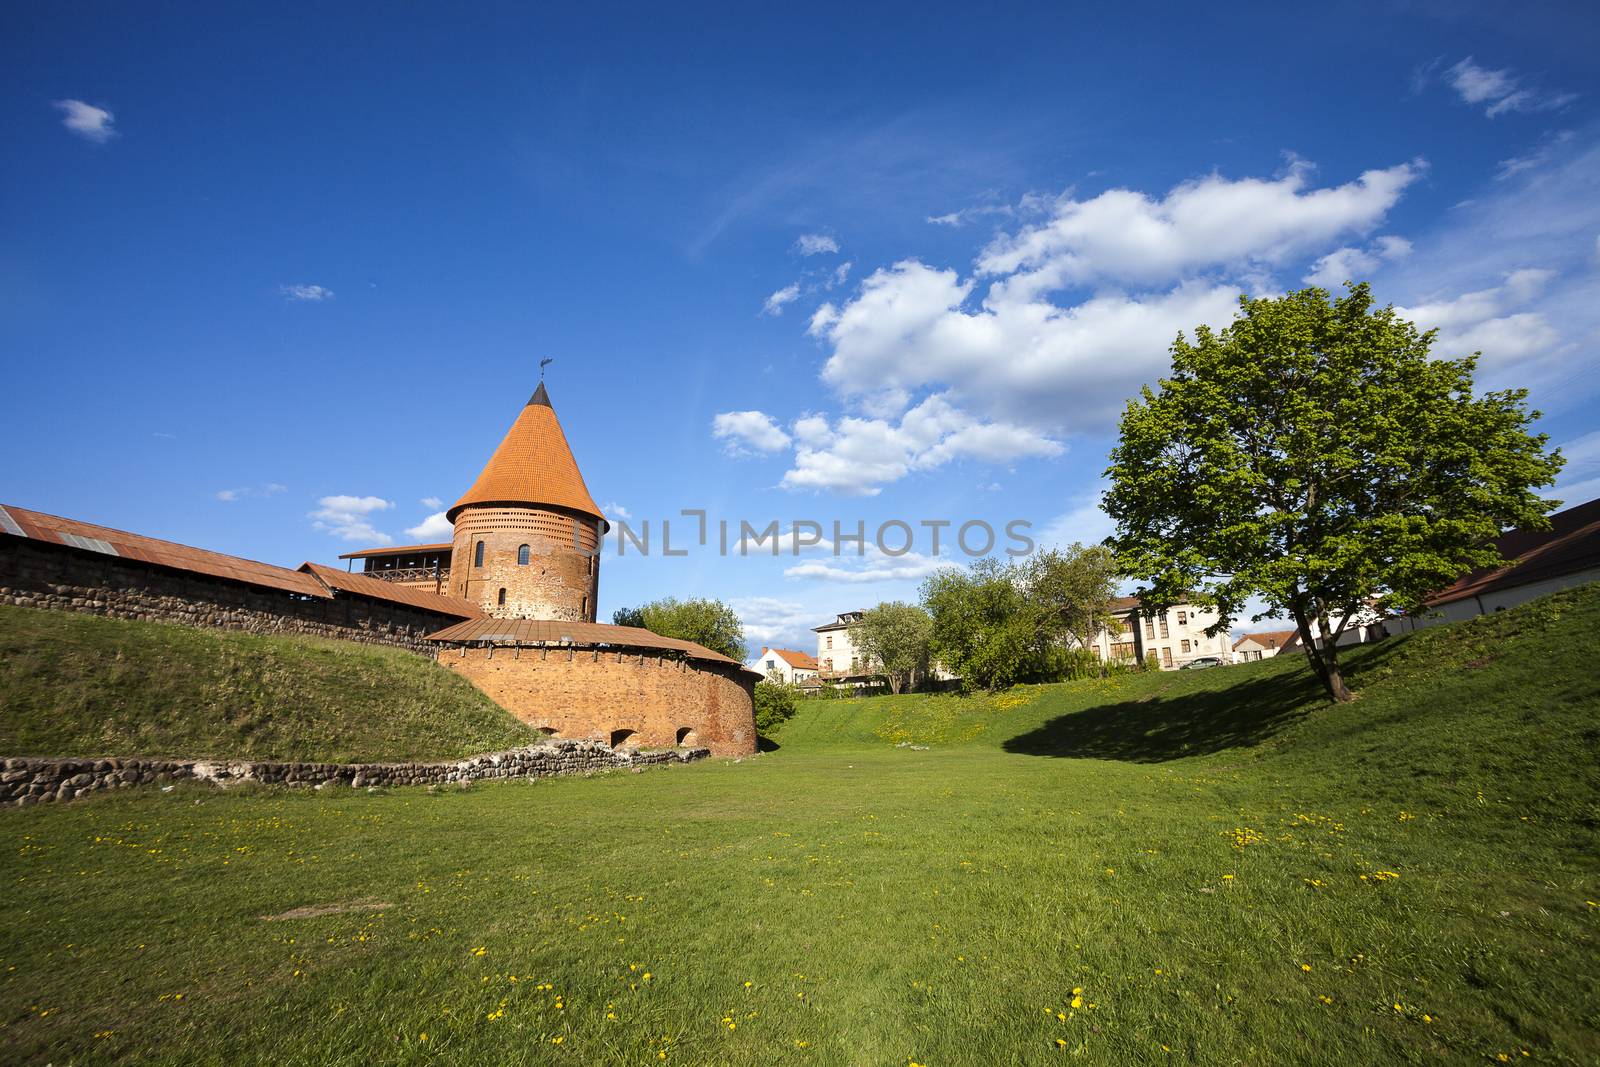 Kaunas Castle, Lithuania by ints